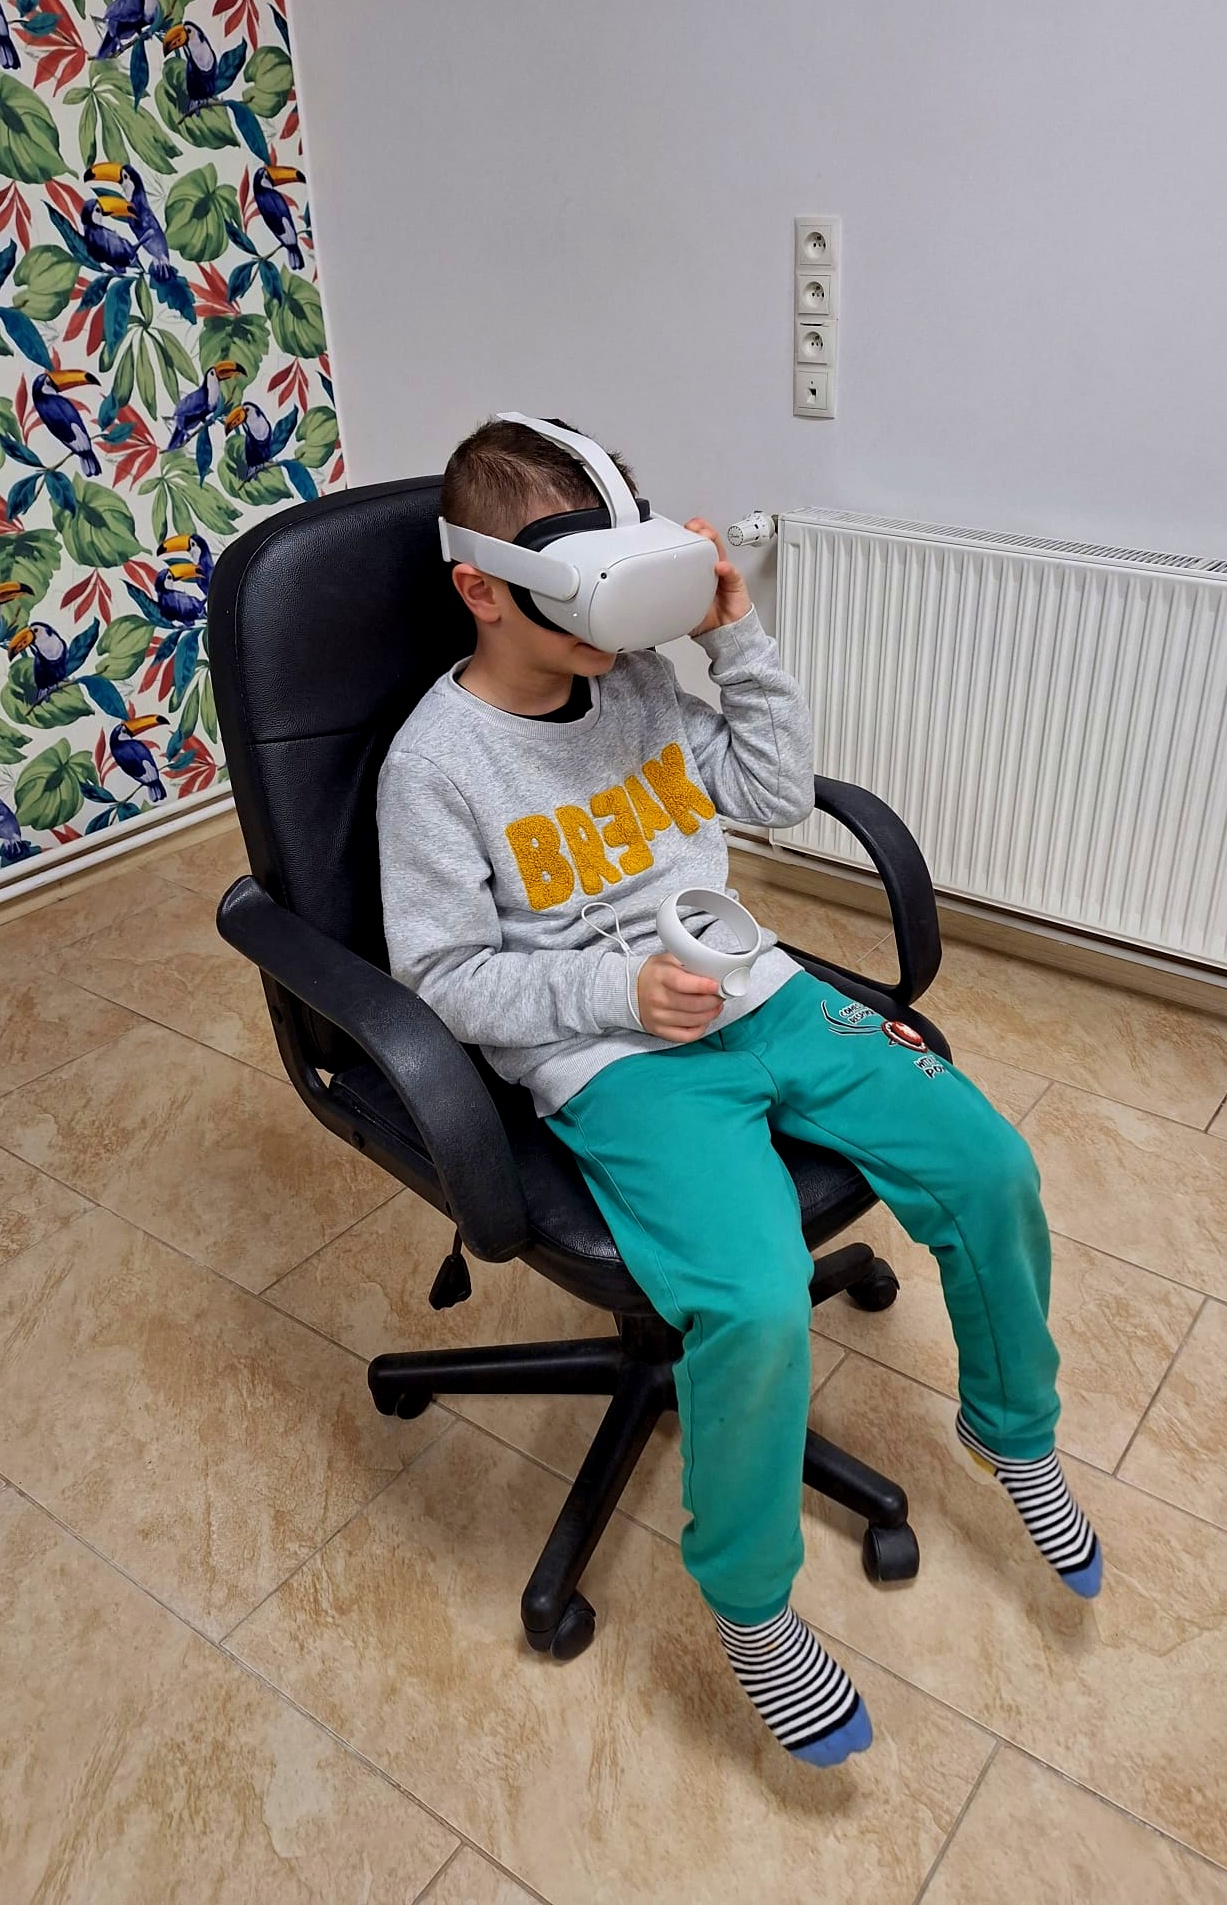 Chłopiec siedzący na fotelu w okularach VR.